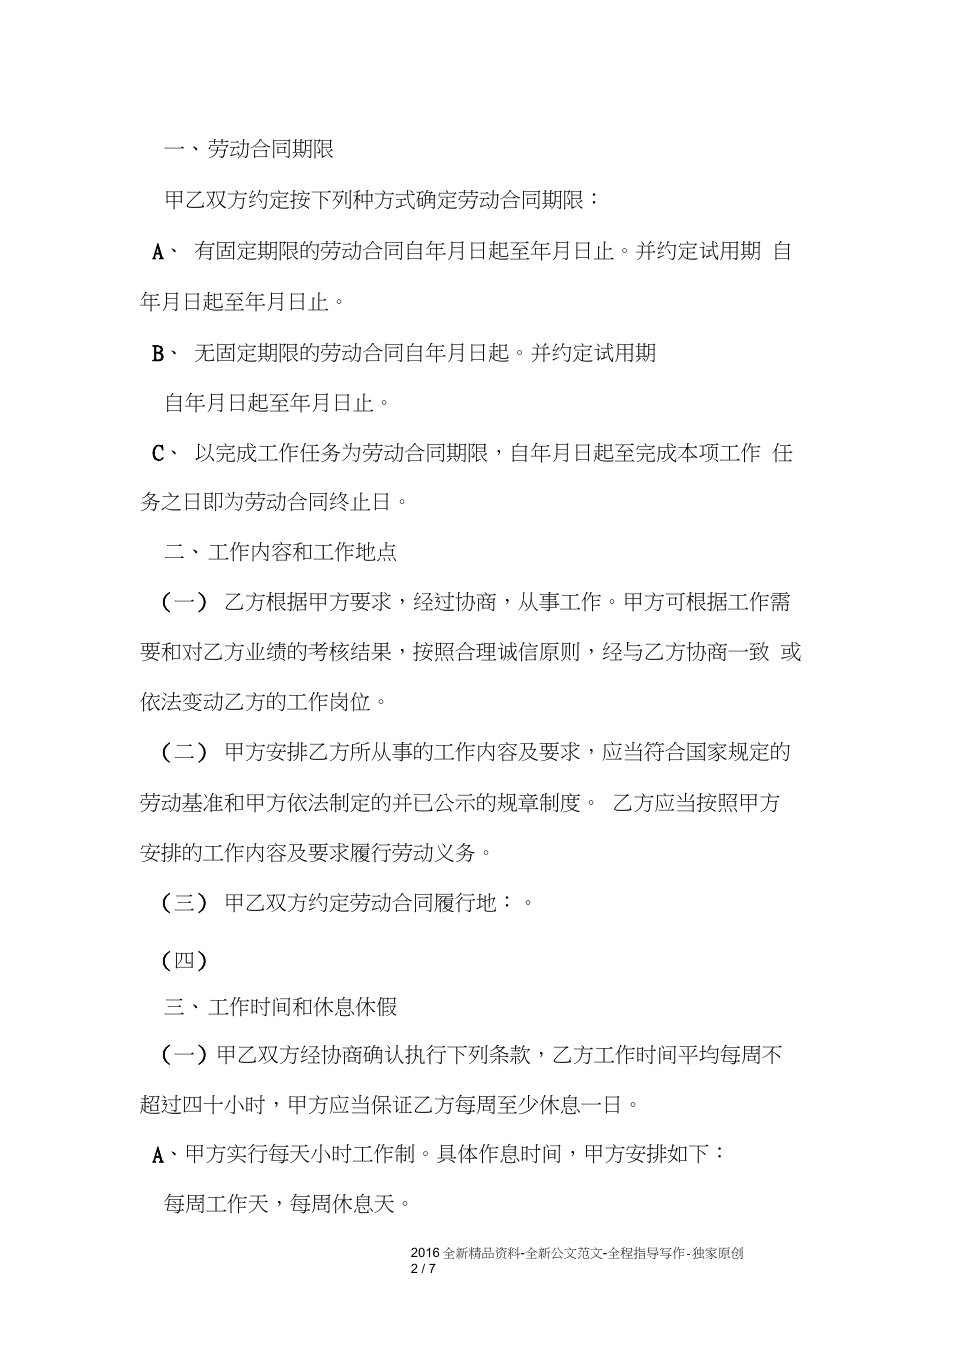 青岛市劳动合同书范本(20201203054100)